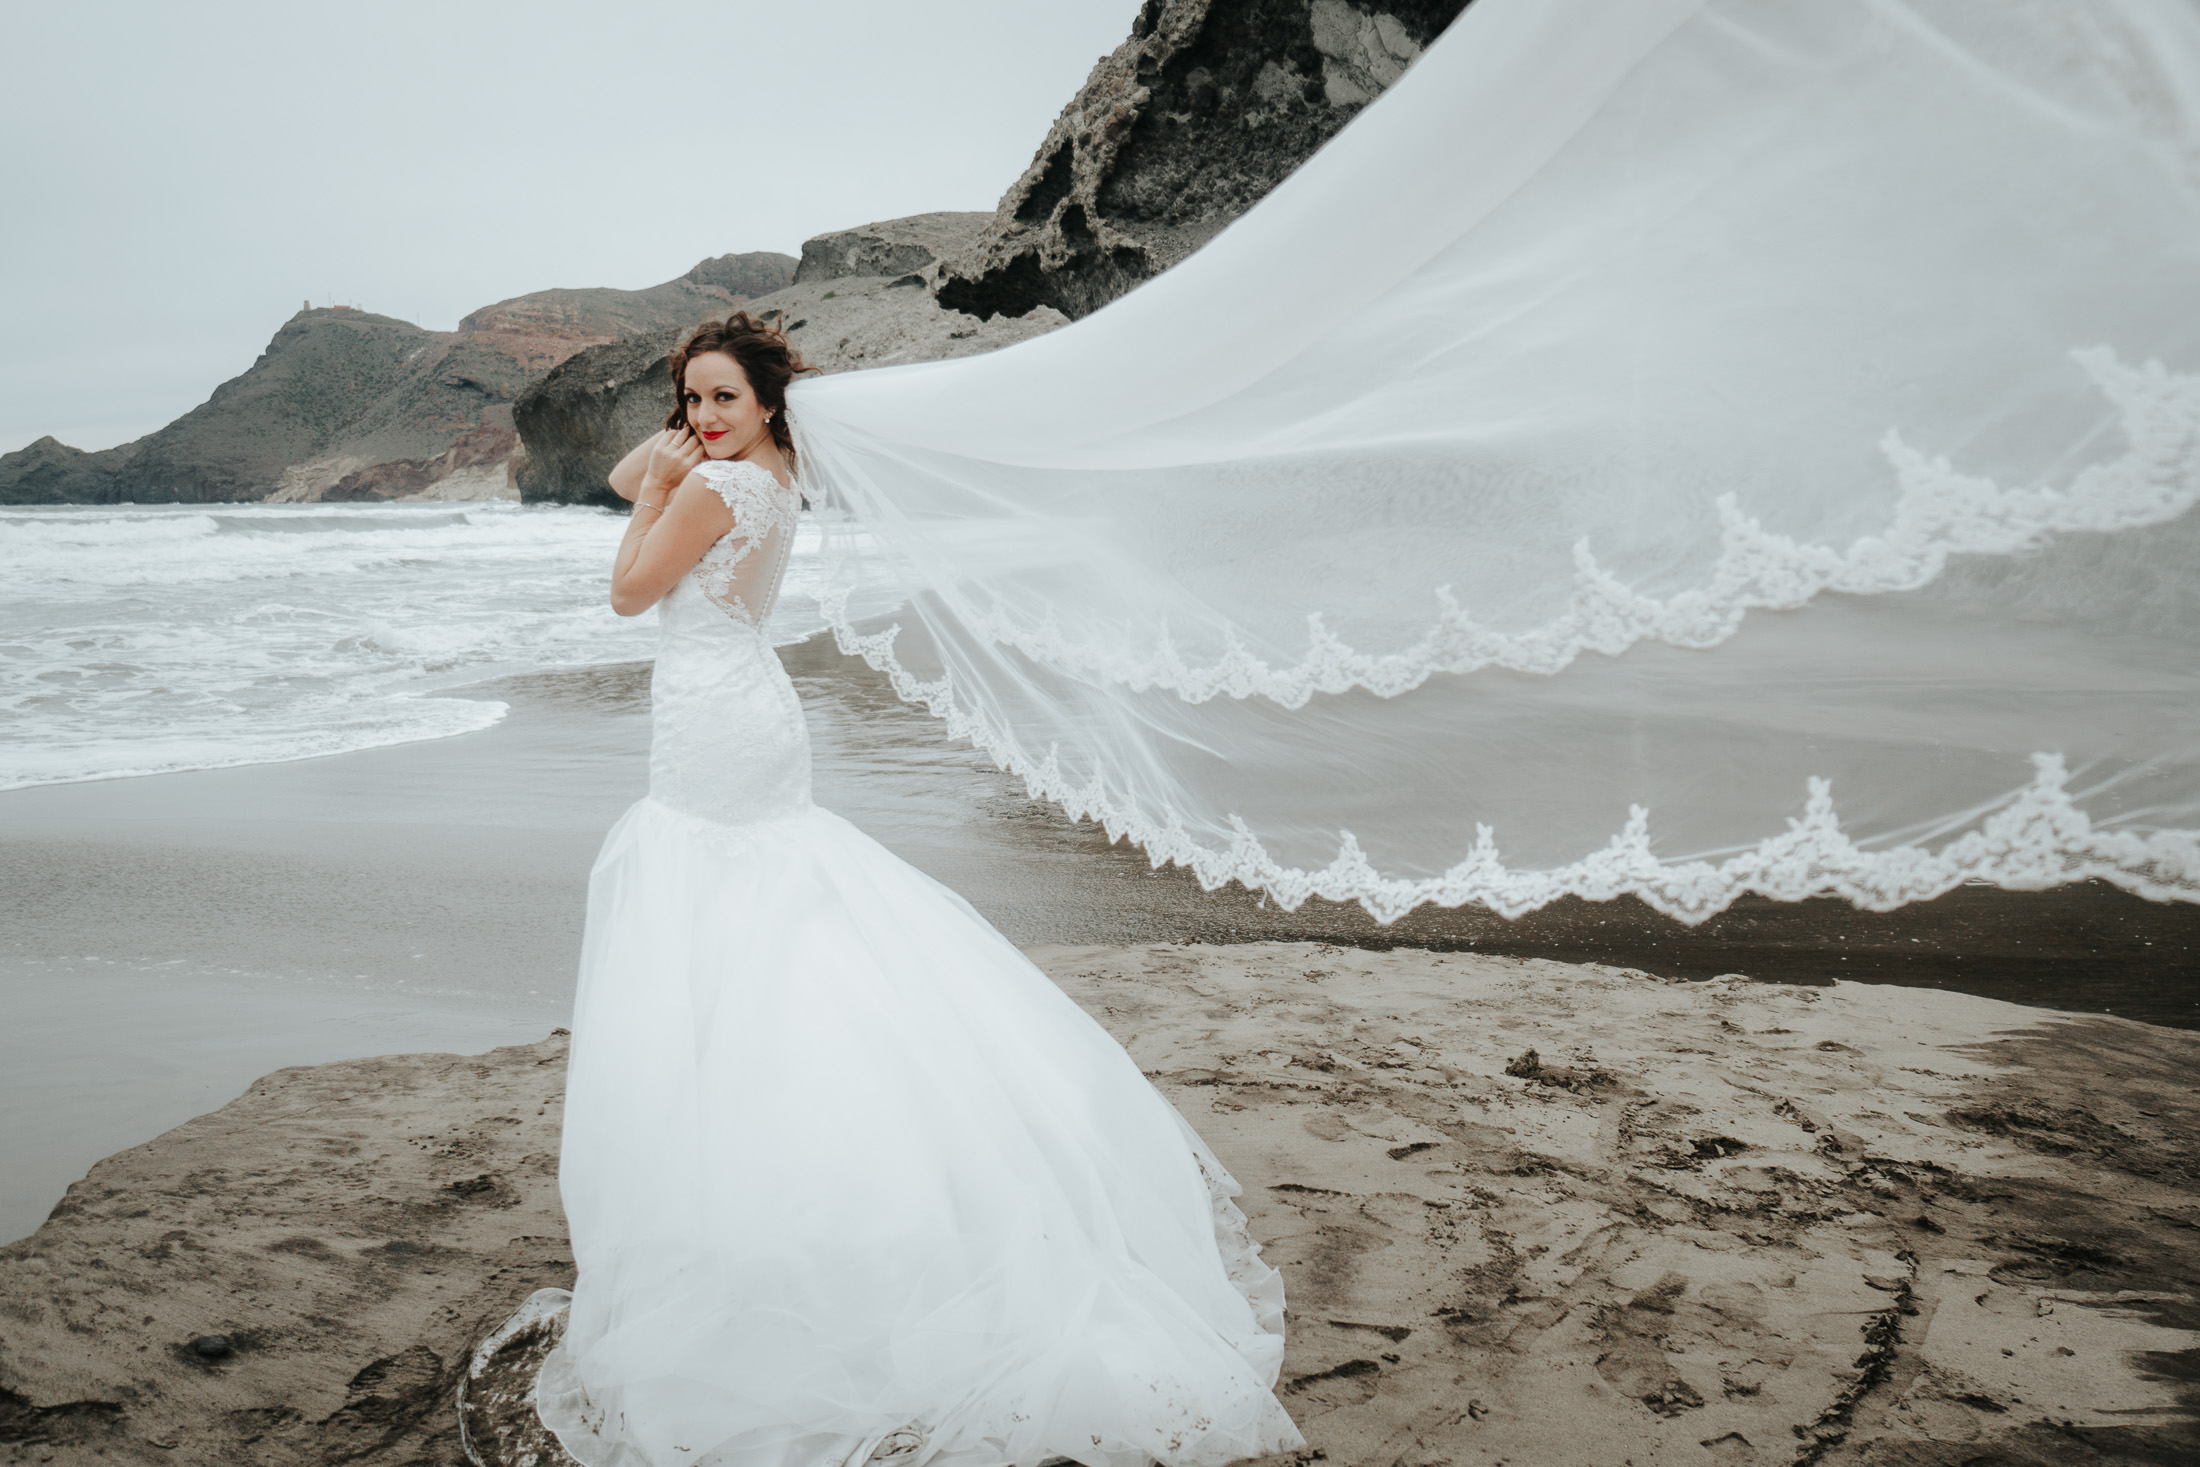 Post wedding in beach of Spain